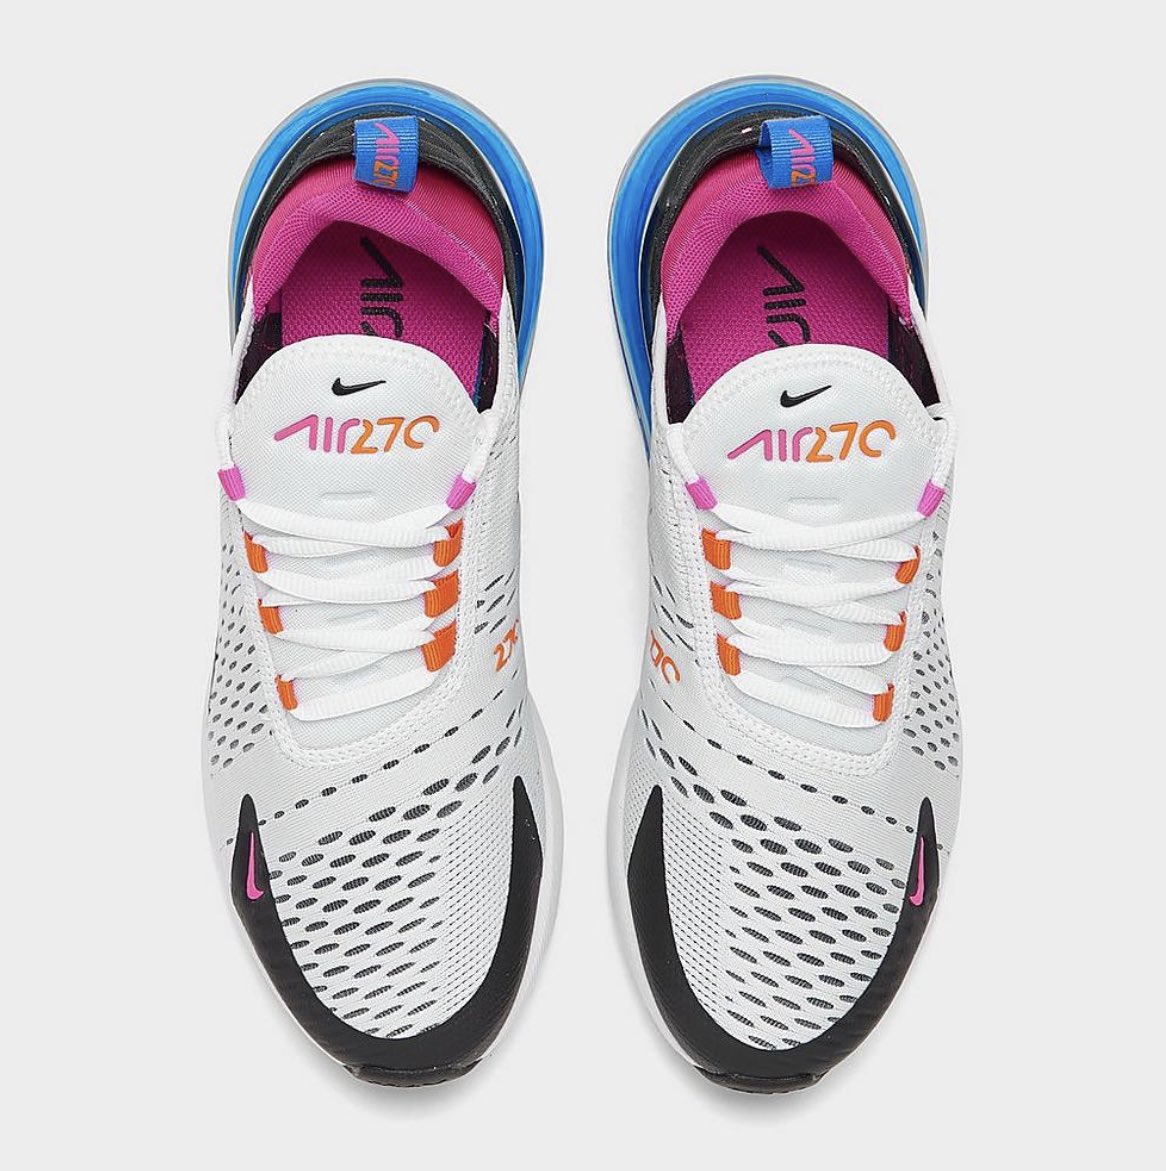 $97.50 w/code KLARNA: Nike Air Max 270 